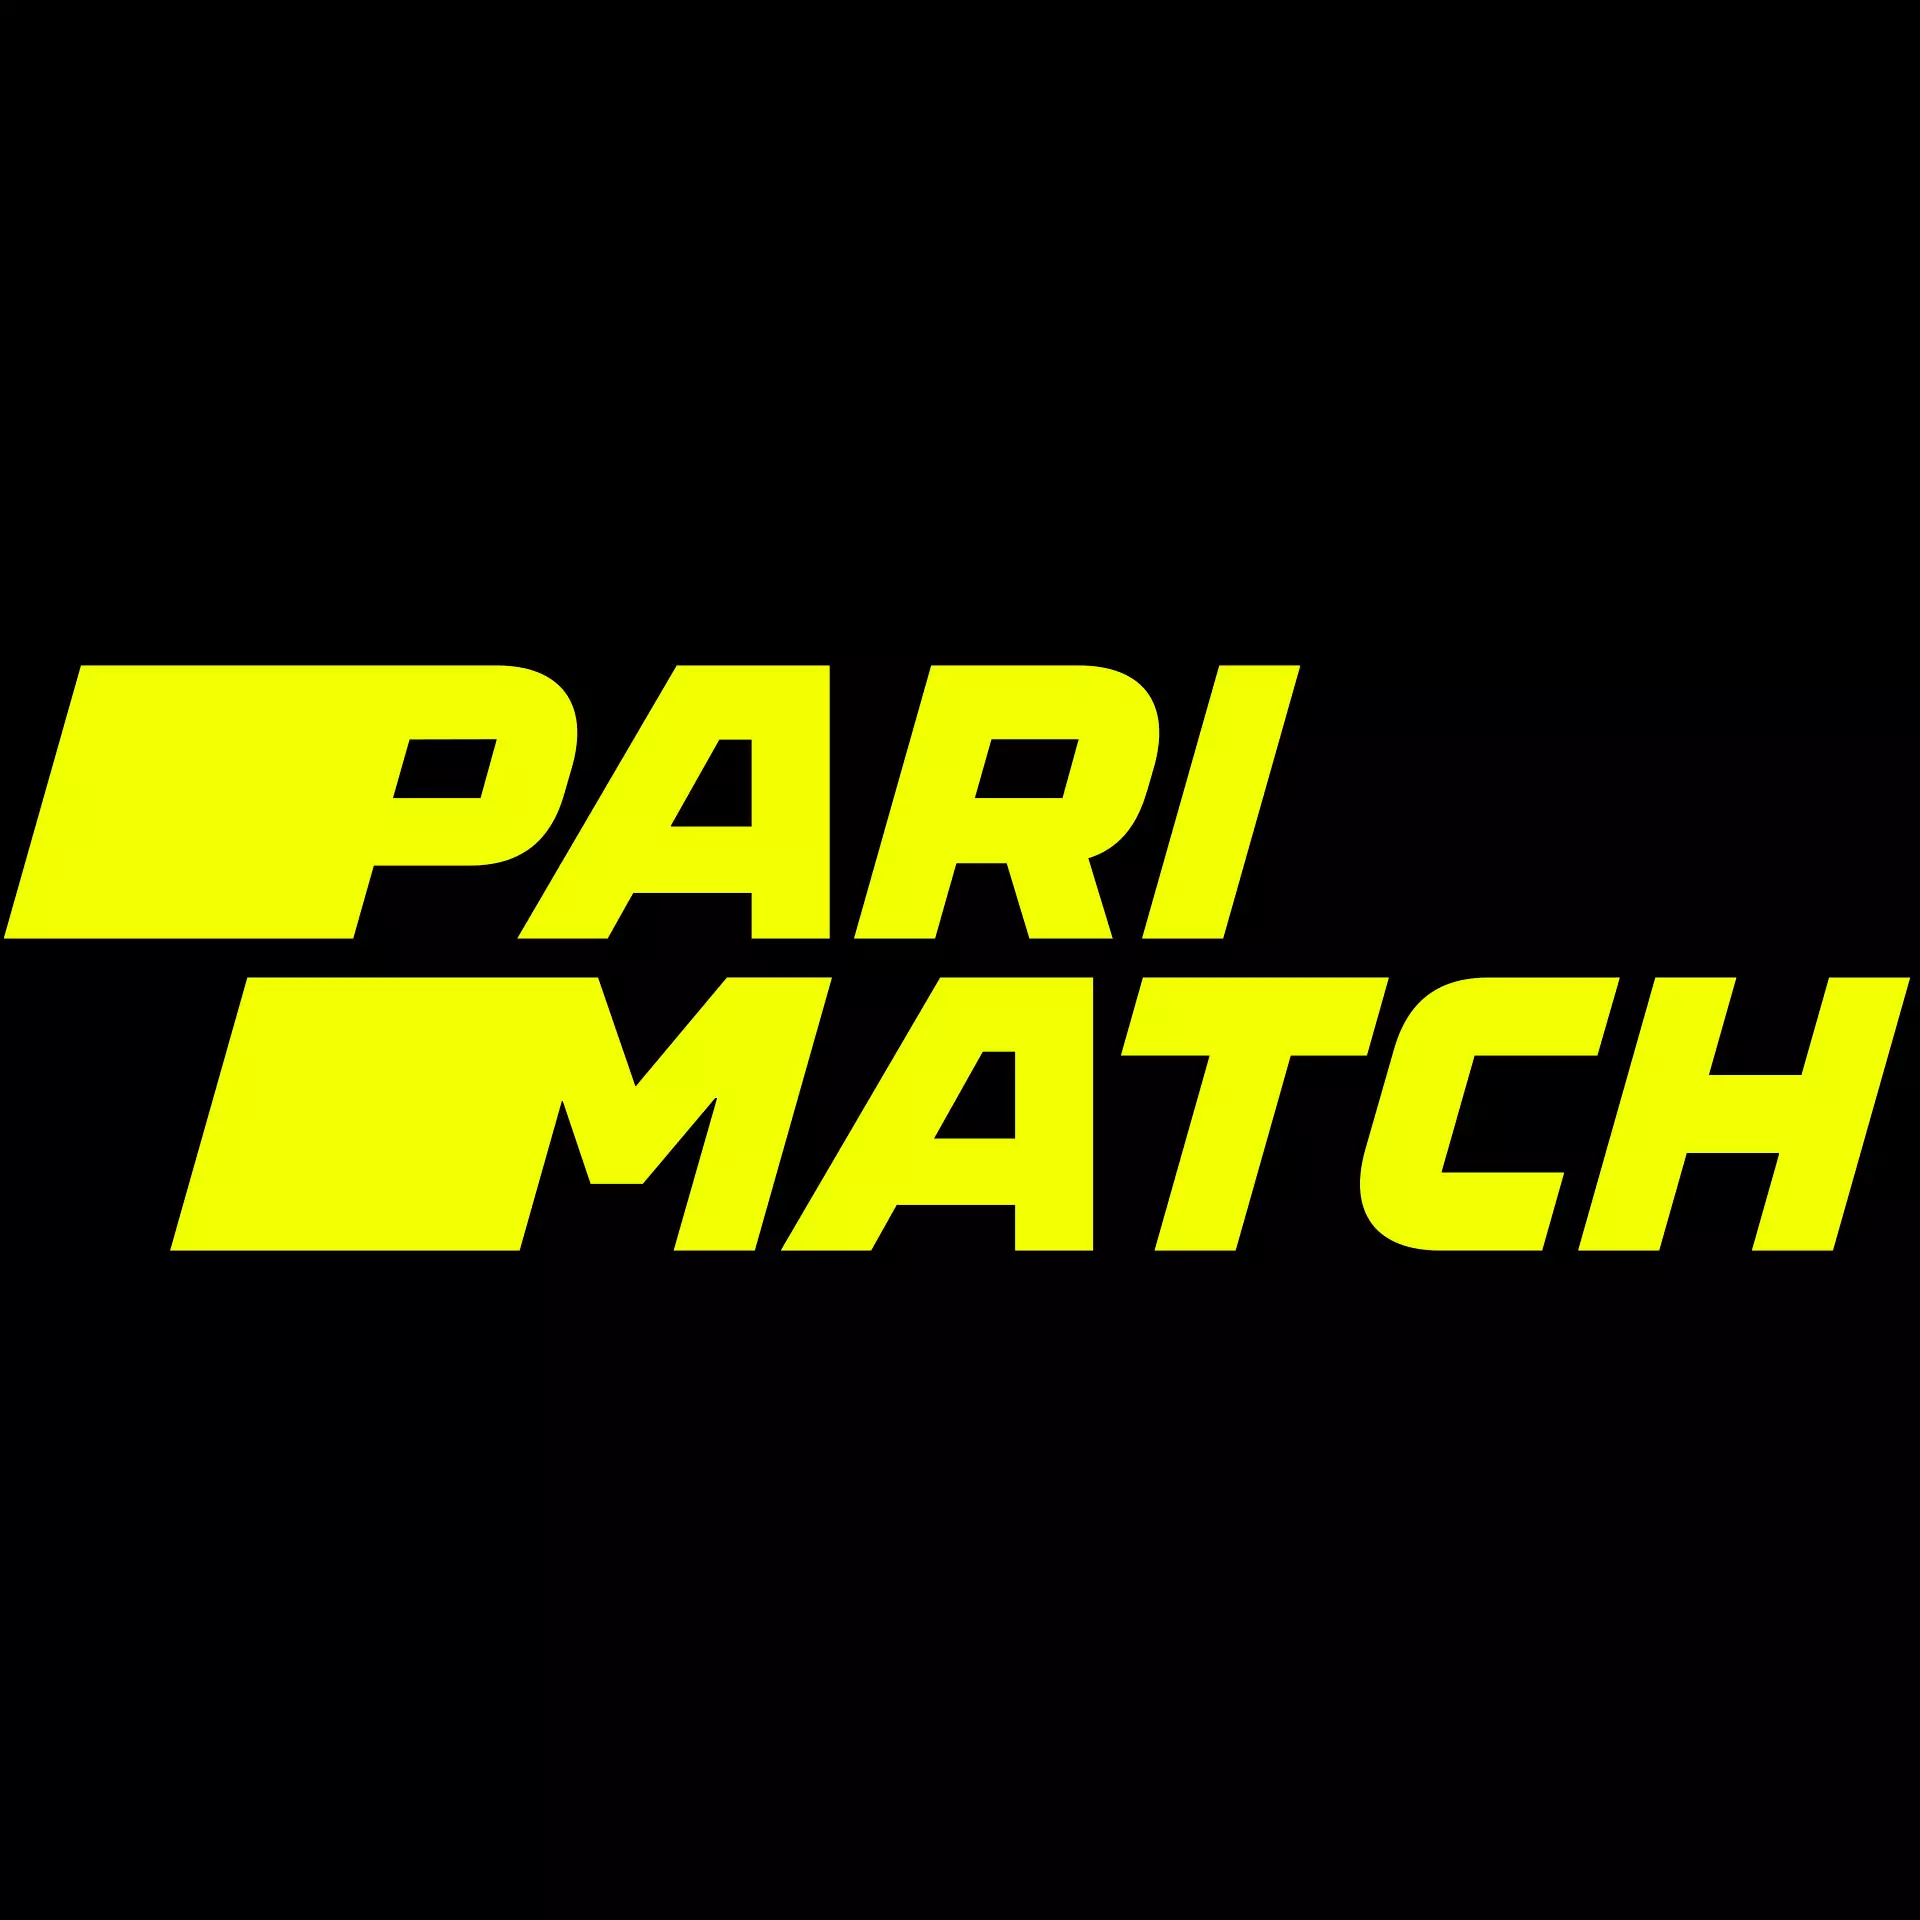 Parimatch भारत में सबसे लोकप्रिय क्रिकेट सट्टेबाजी साइट है।